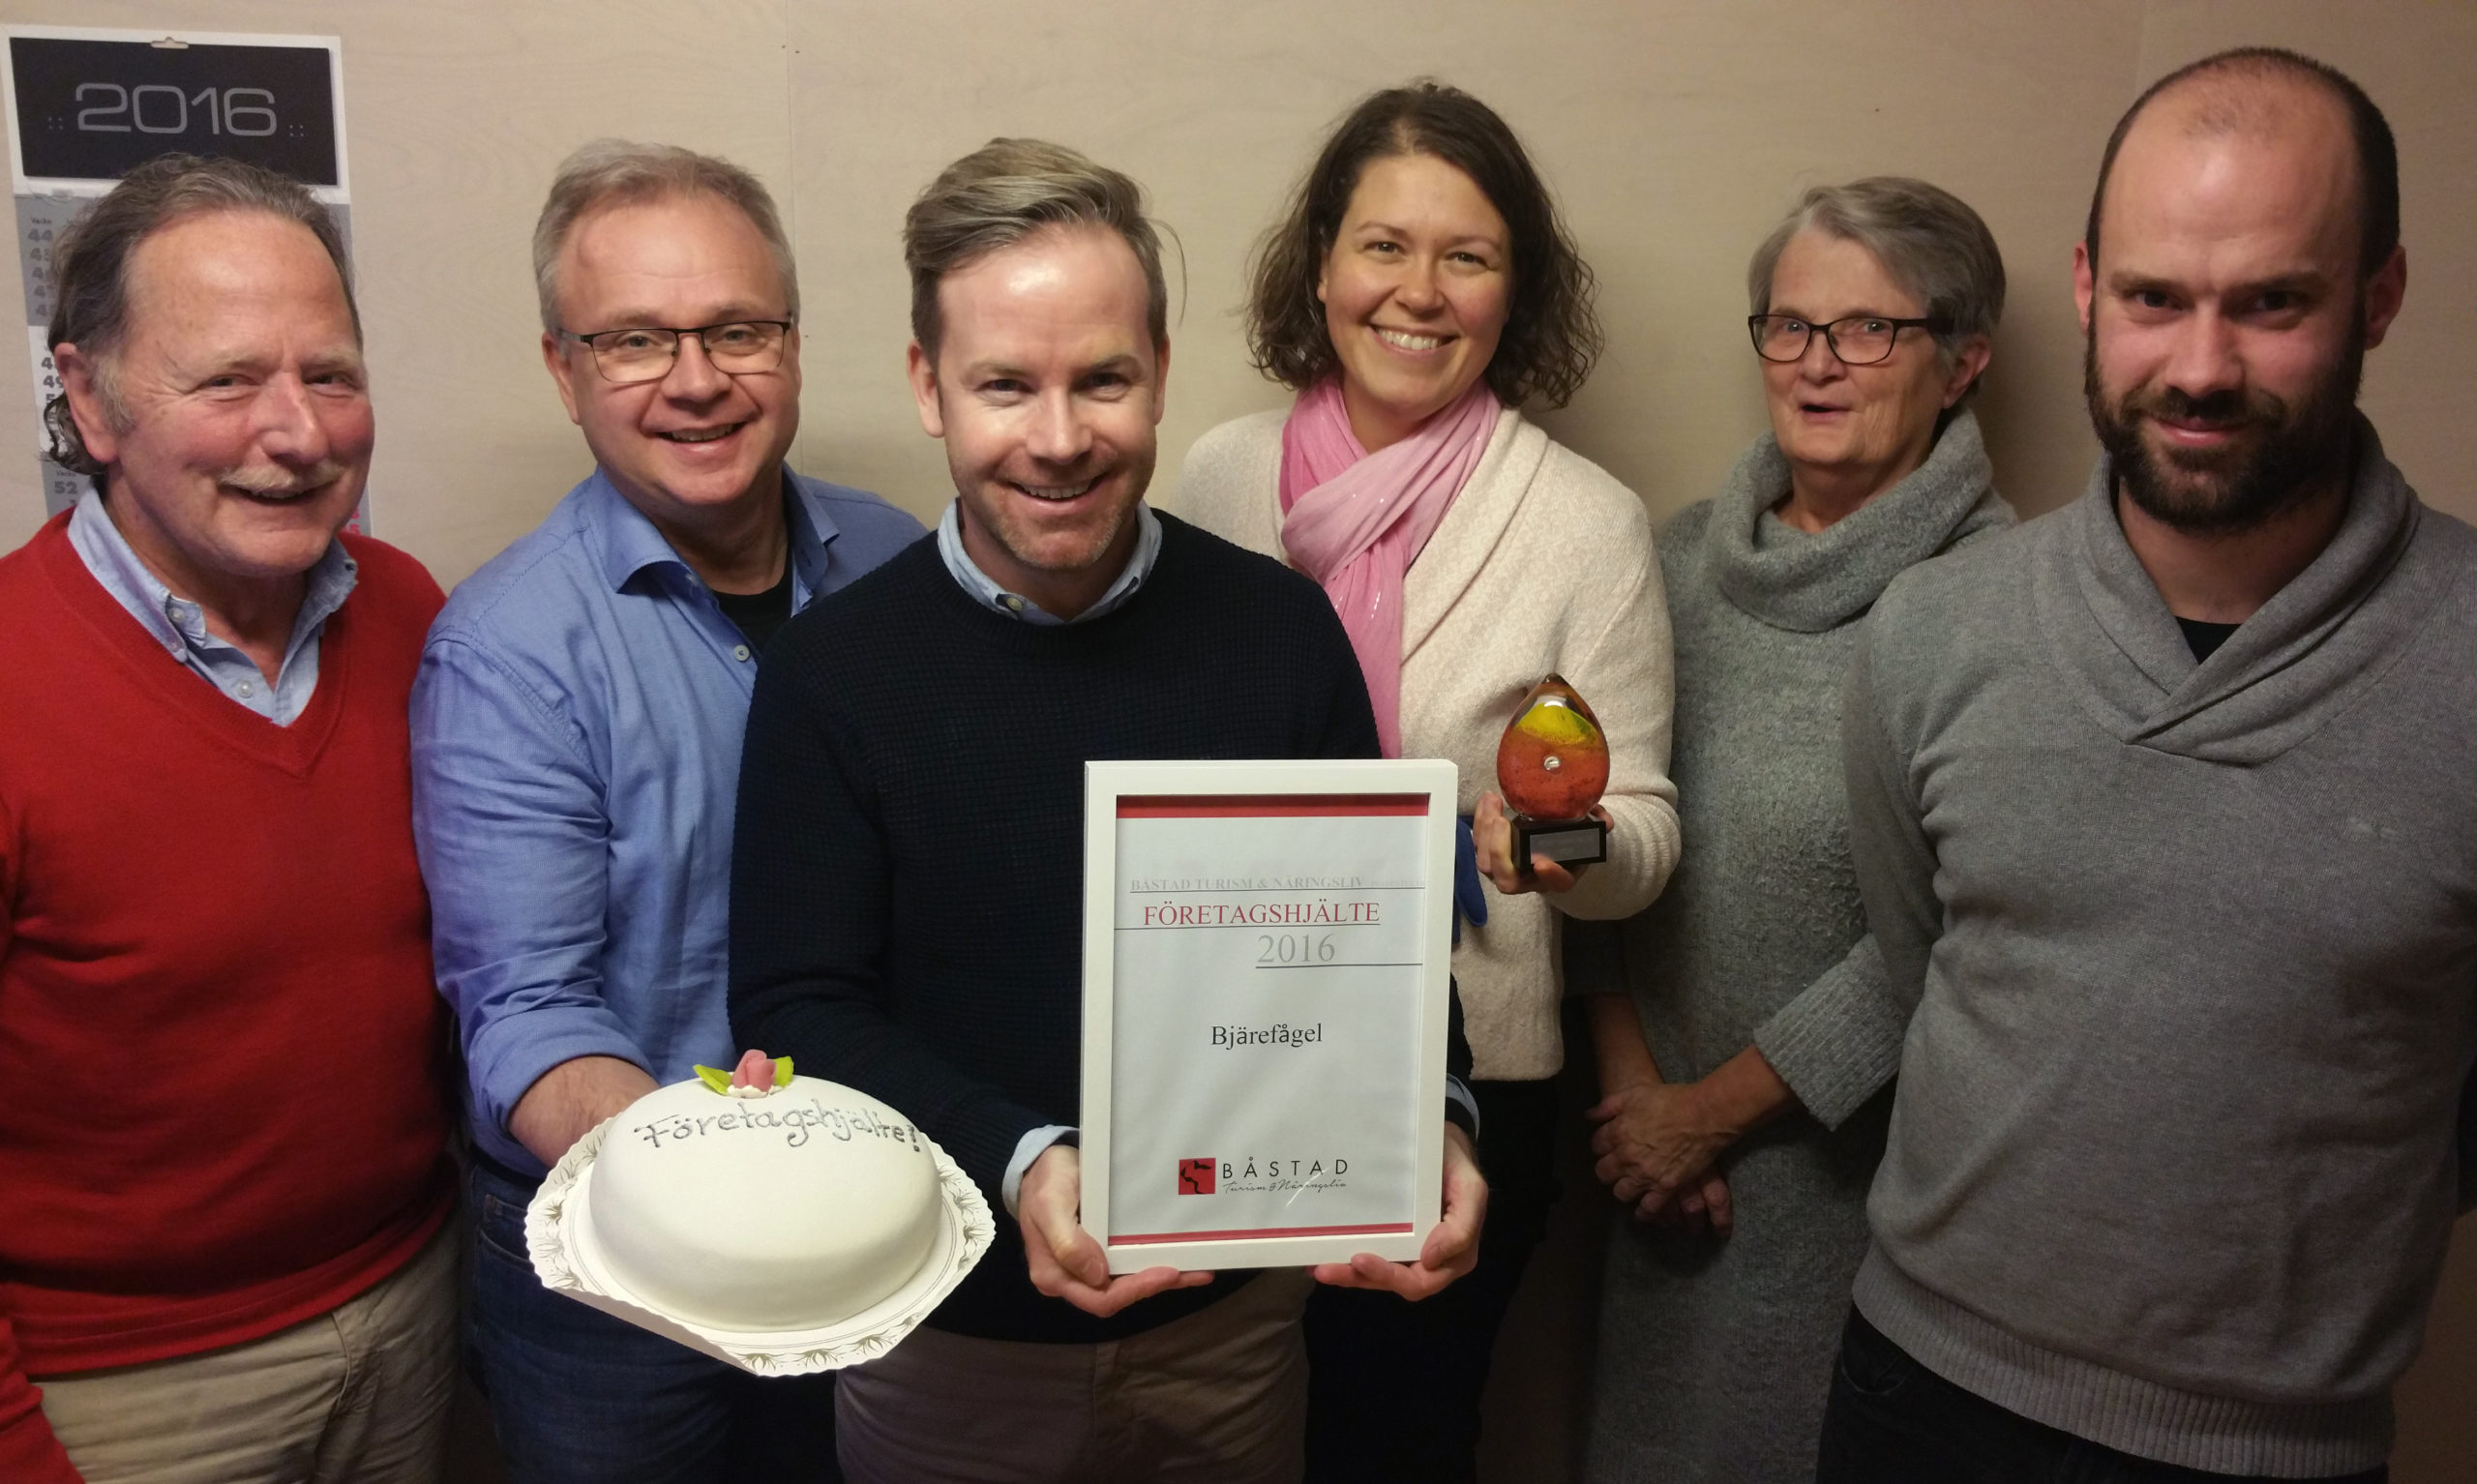 Du visar för närvarande Bjärefågel är en av Båstads kommuns företagshjältar 2016!